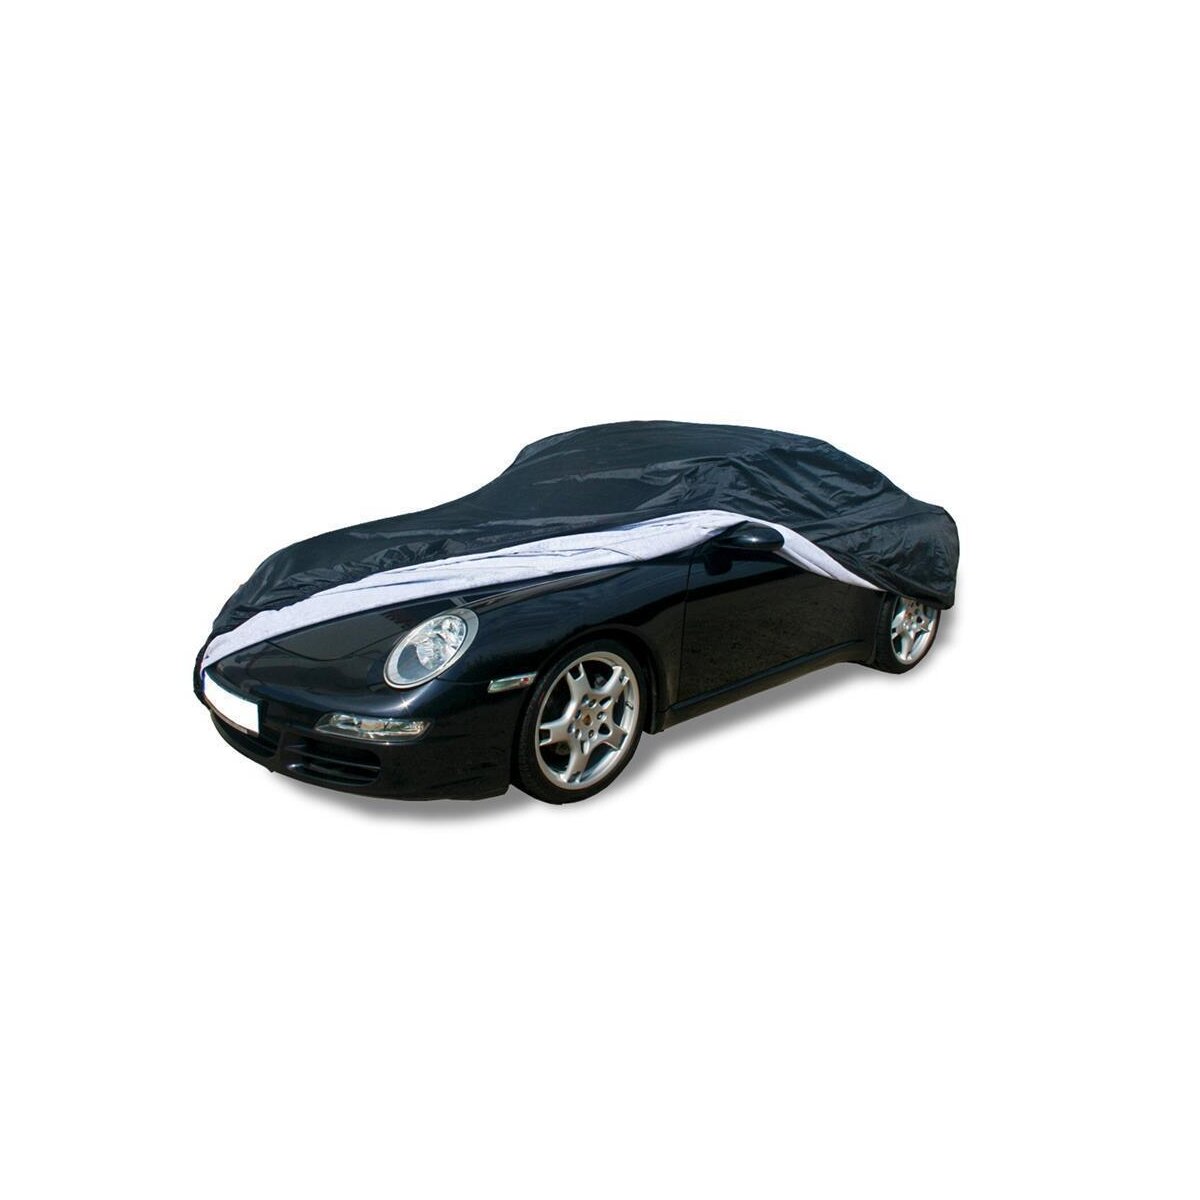 Outdoor Autoabdeckung, Ganzgarage Jaguar F-Type, 169,00 €